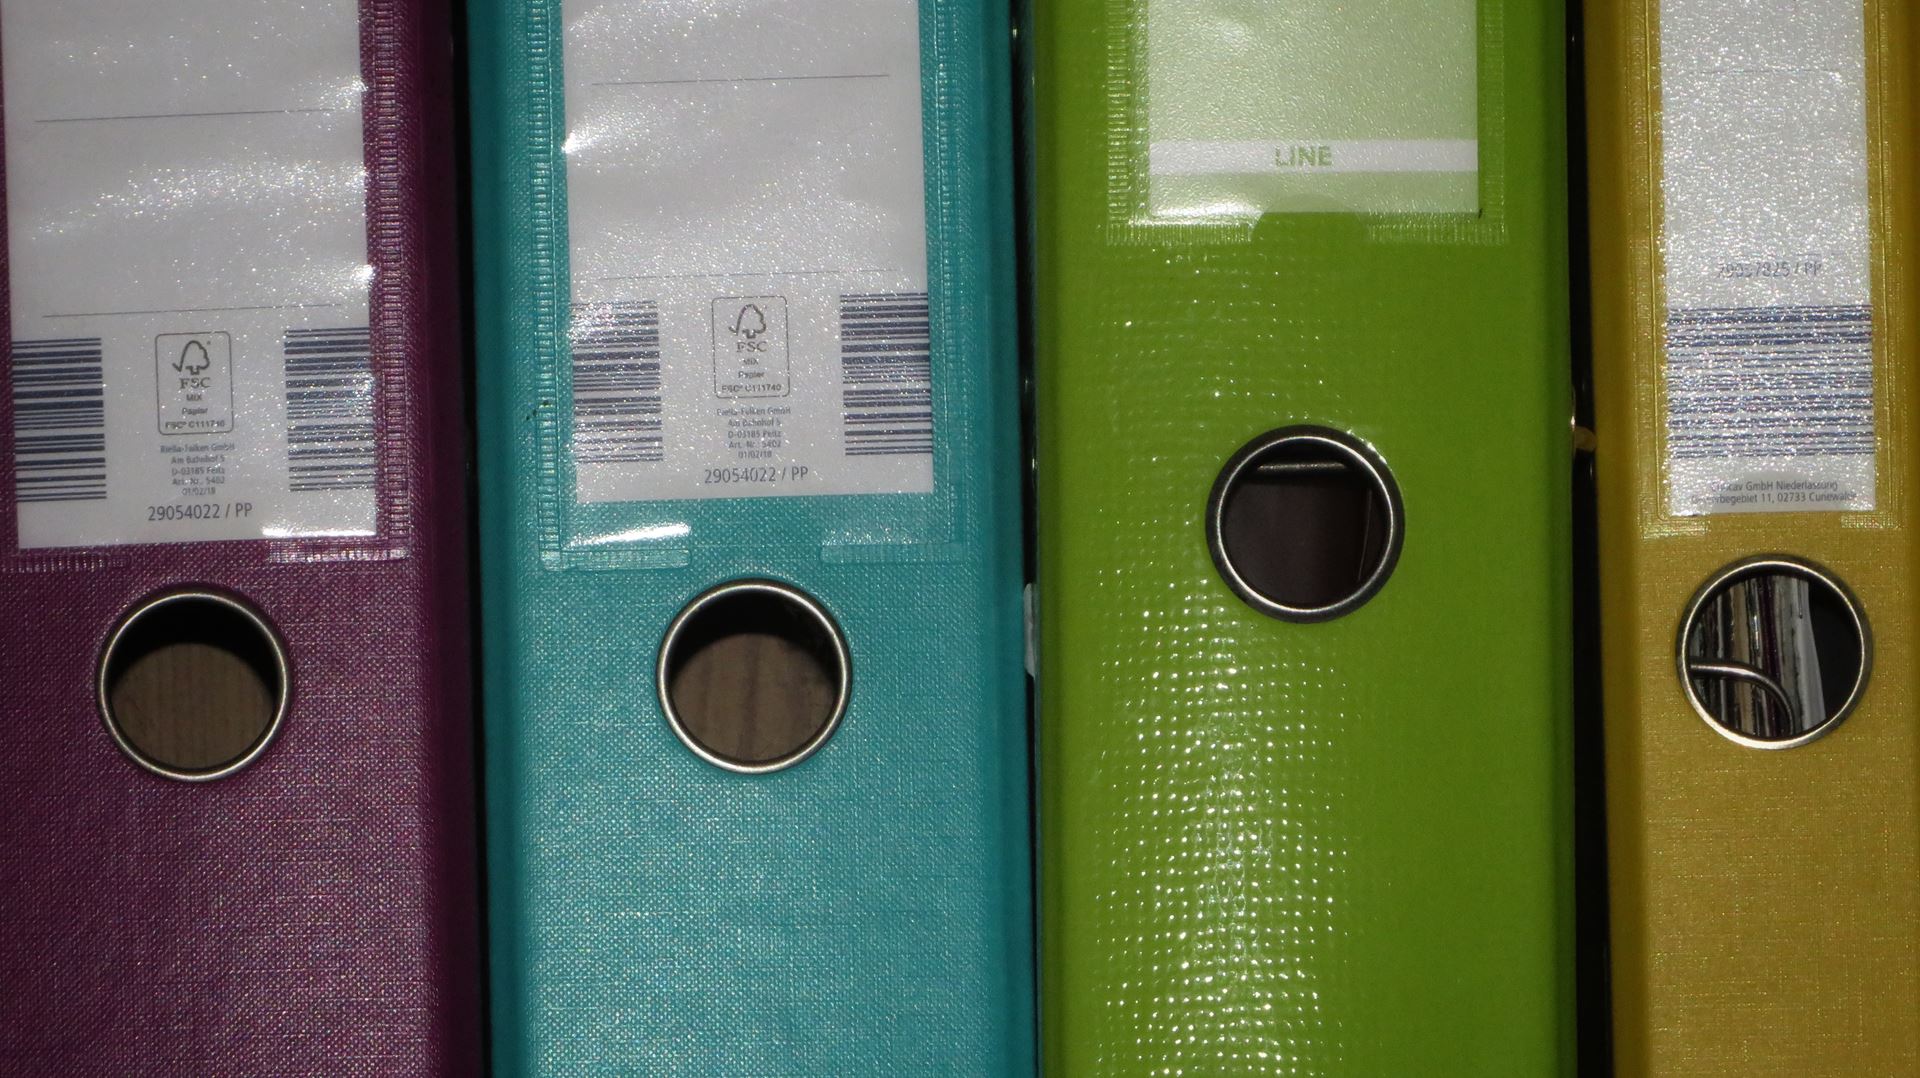 Coloured Folders